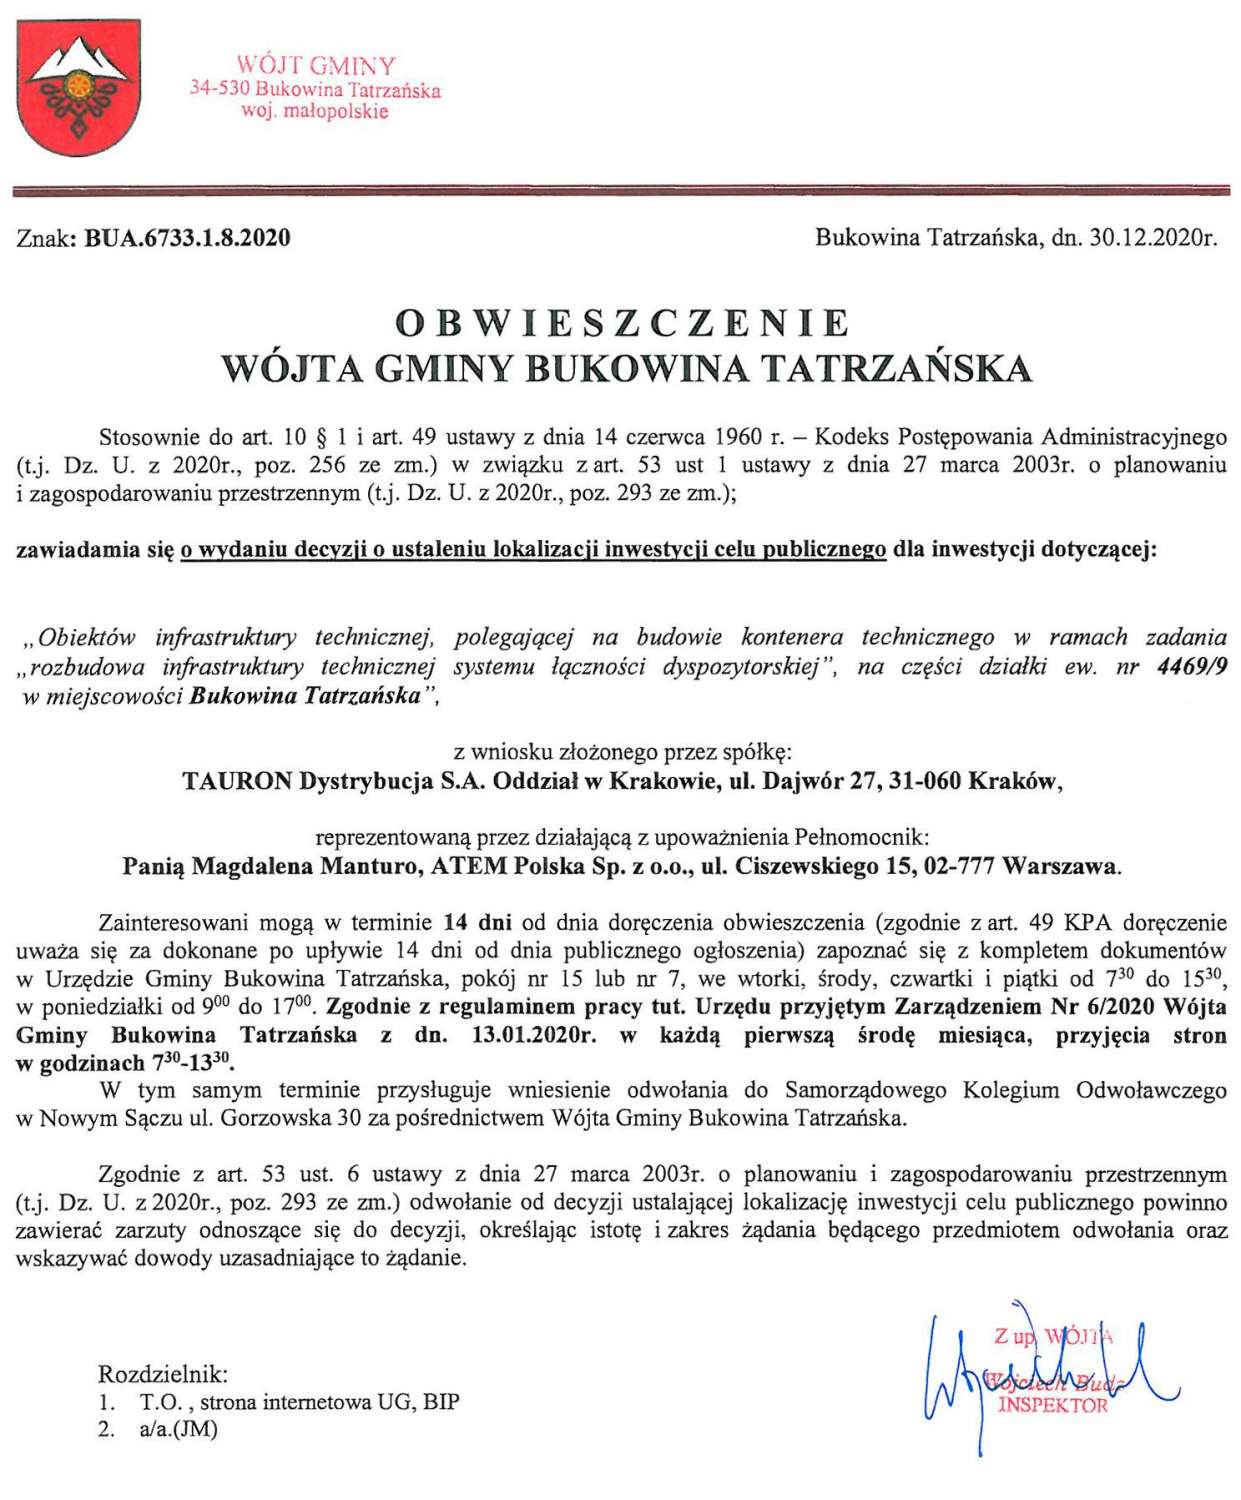 Obwieszczenie Wójta Gminy Bukowina Tatrzańska BUA 6733.1.8.2020